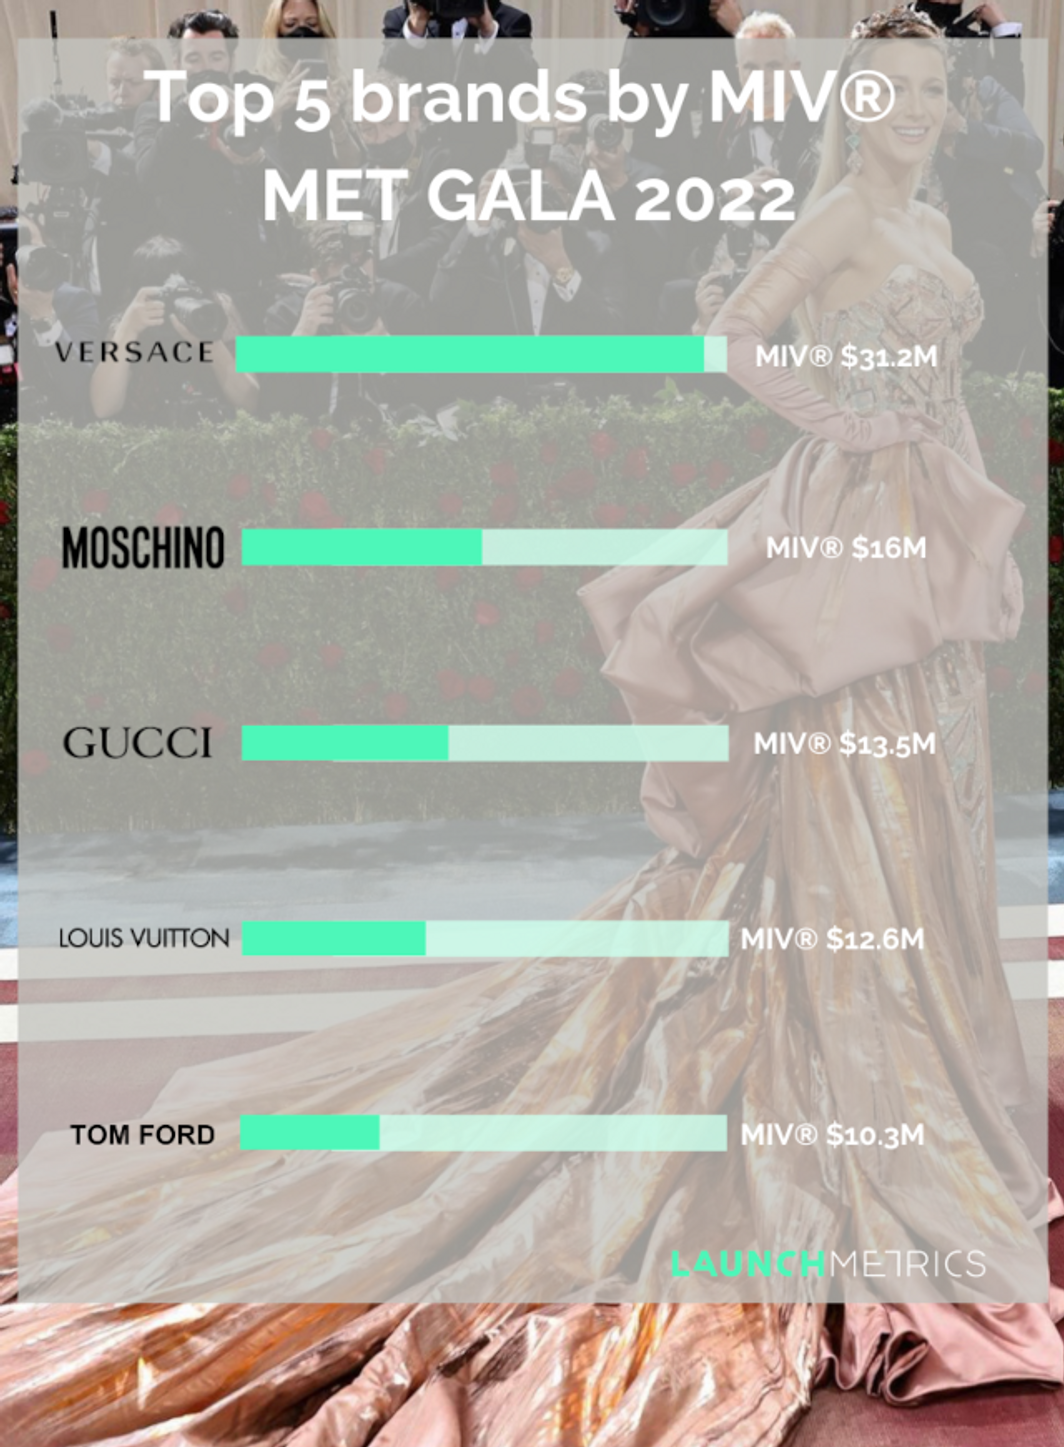 Met Gala 2022 : Versace surperforme sur le digital.